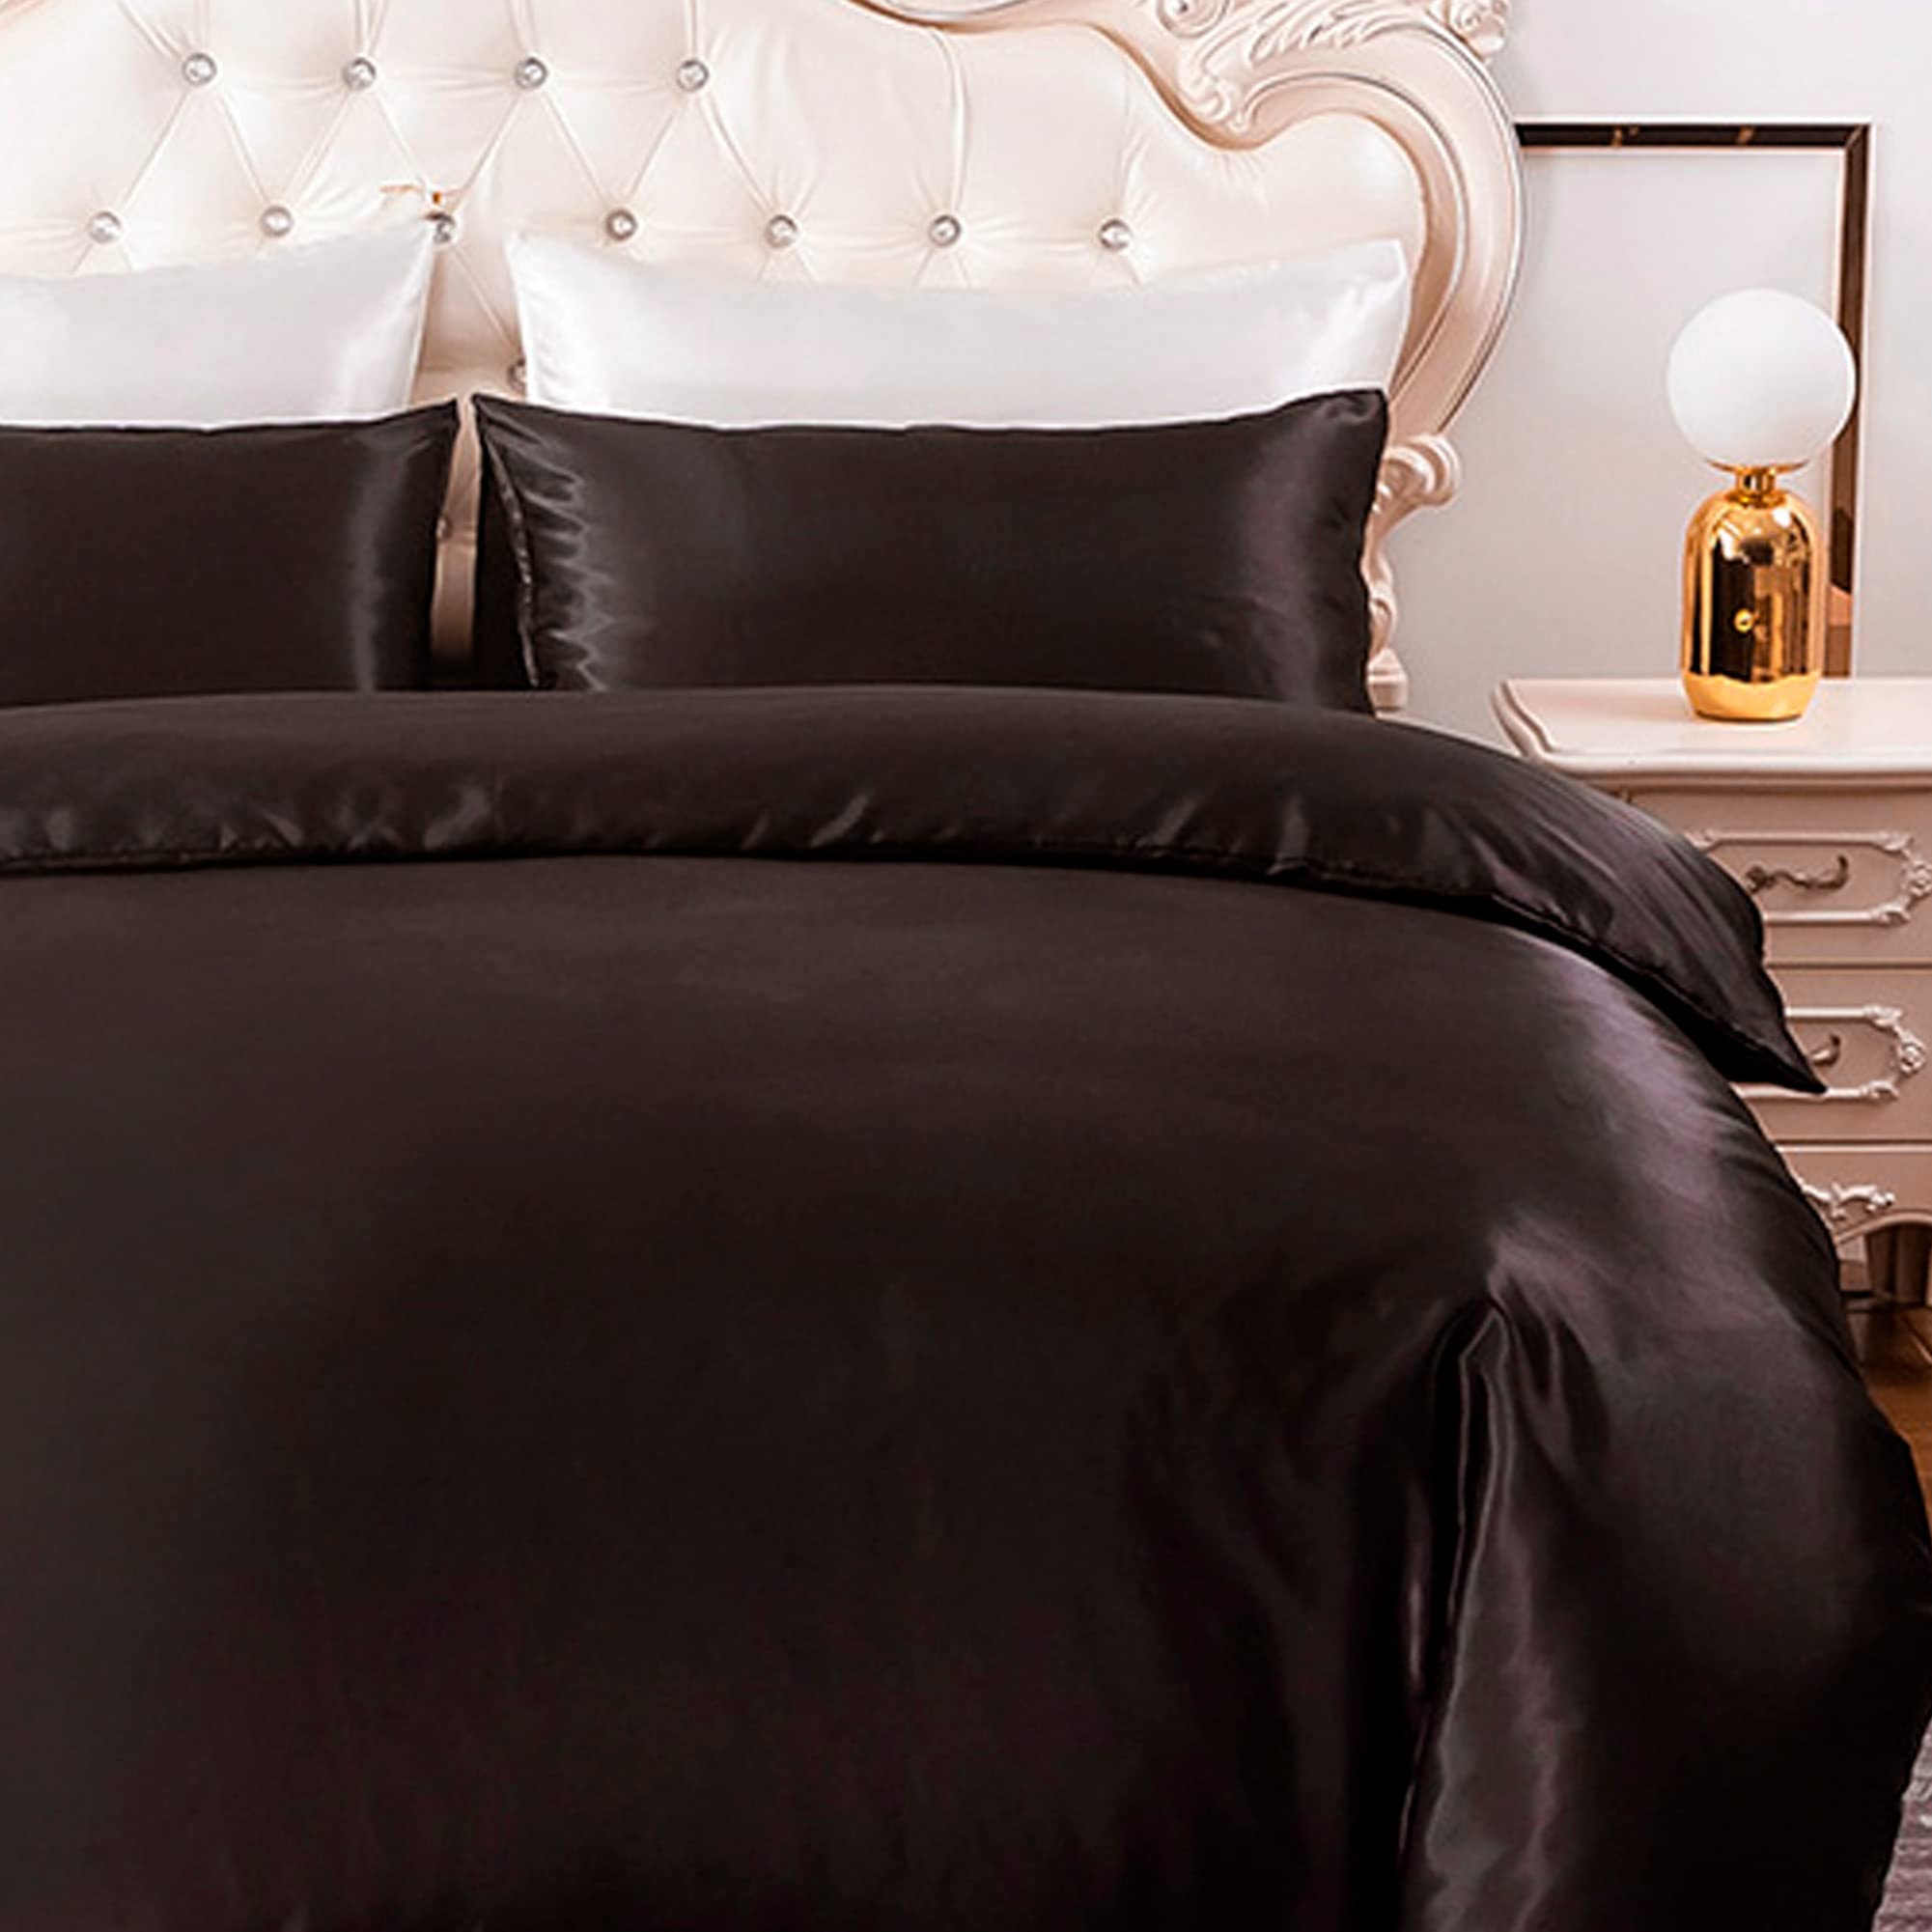 HYSENM Satin Bettwäsche 220 x 230 cm Seide Luxus Bettbezug Set Microfaser Bettbezug+ 2 Kissenhülle 50 x 70 cm einfarbig glatt bequem elegant, Schwarz